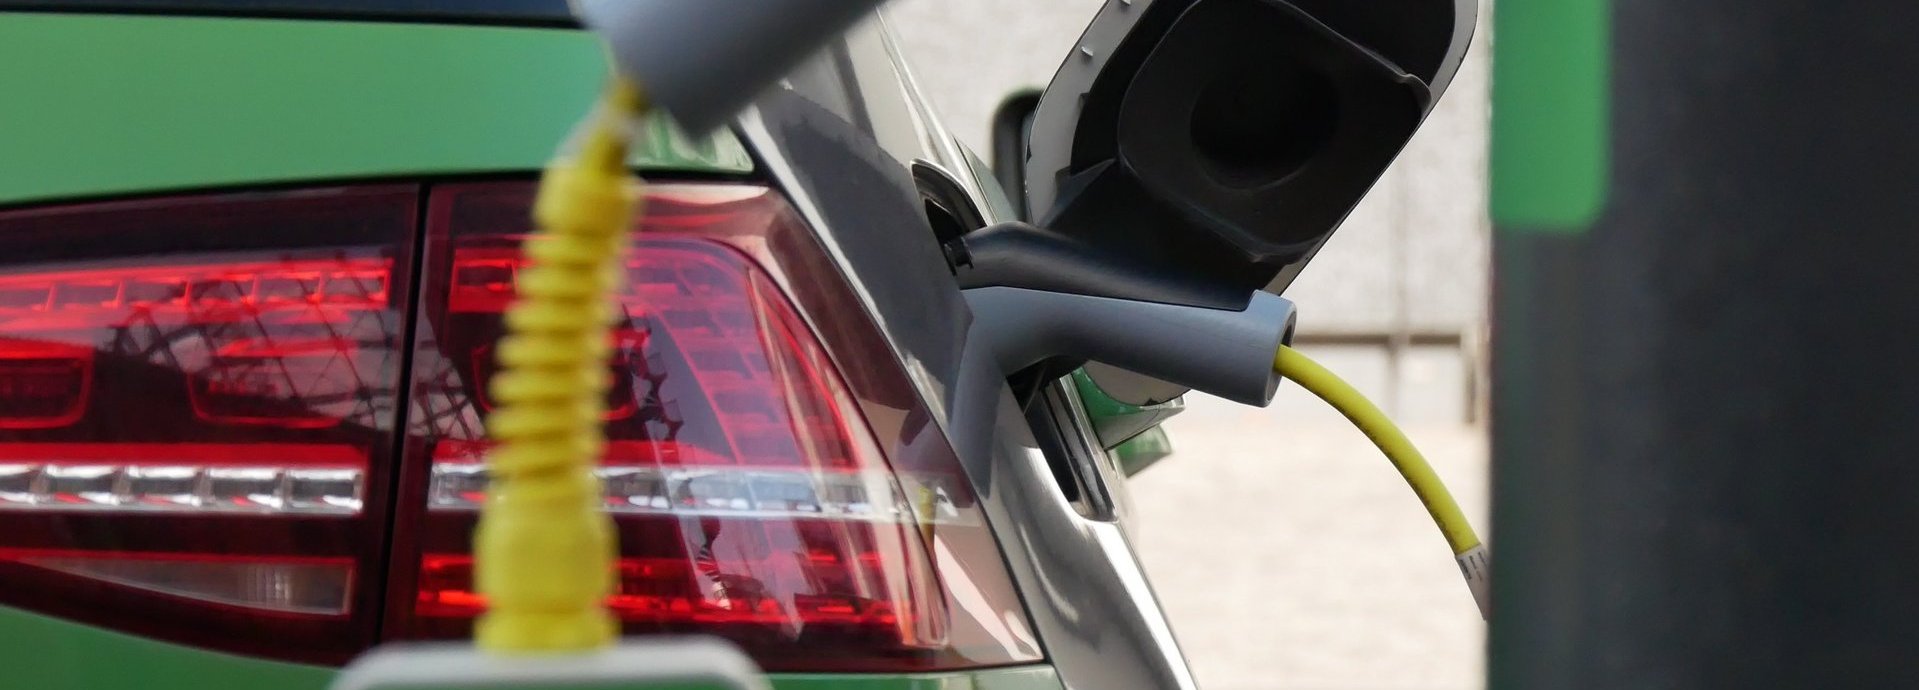 Grünes Elektroauto wird an einer elektrischen Ladesäule geladen